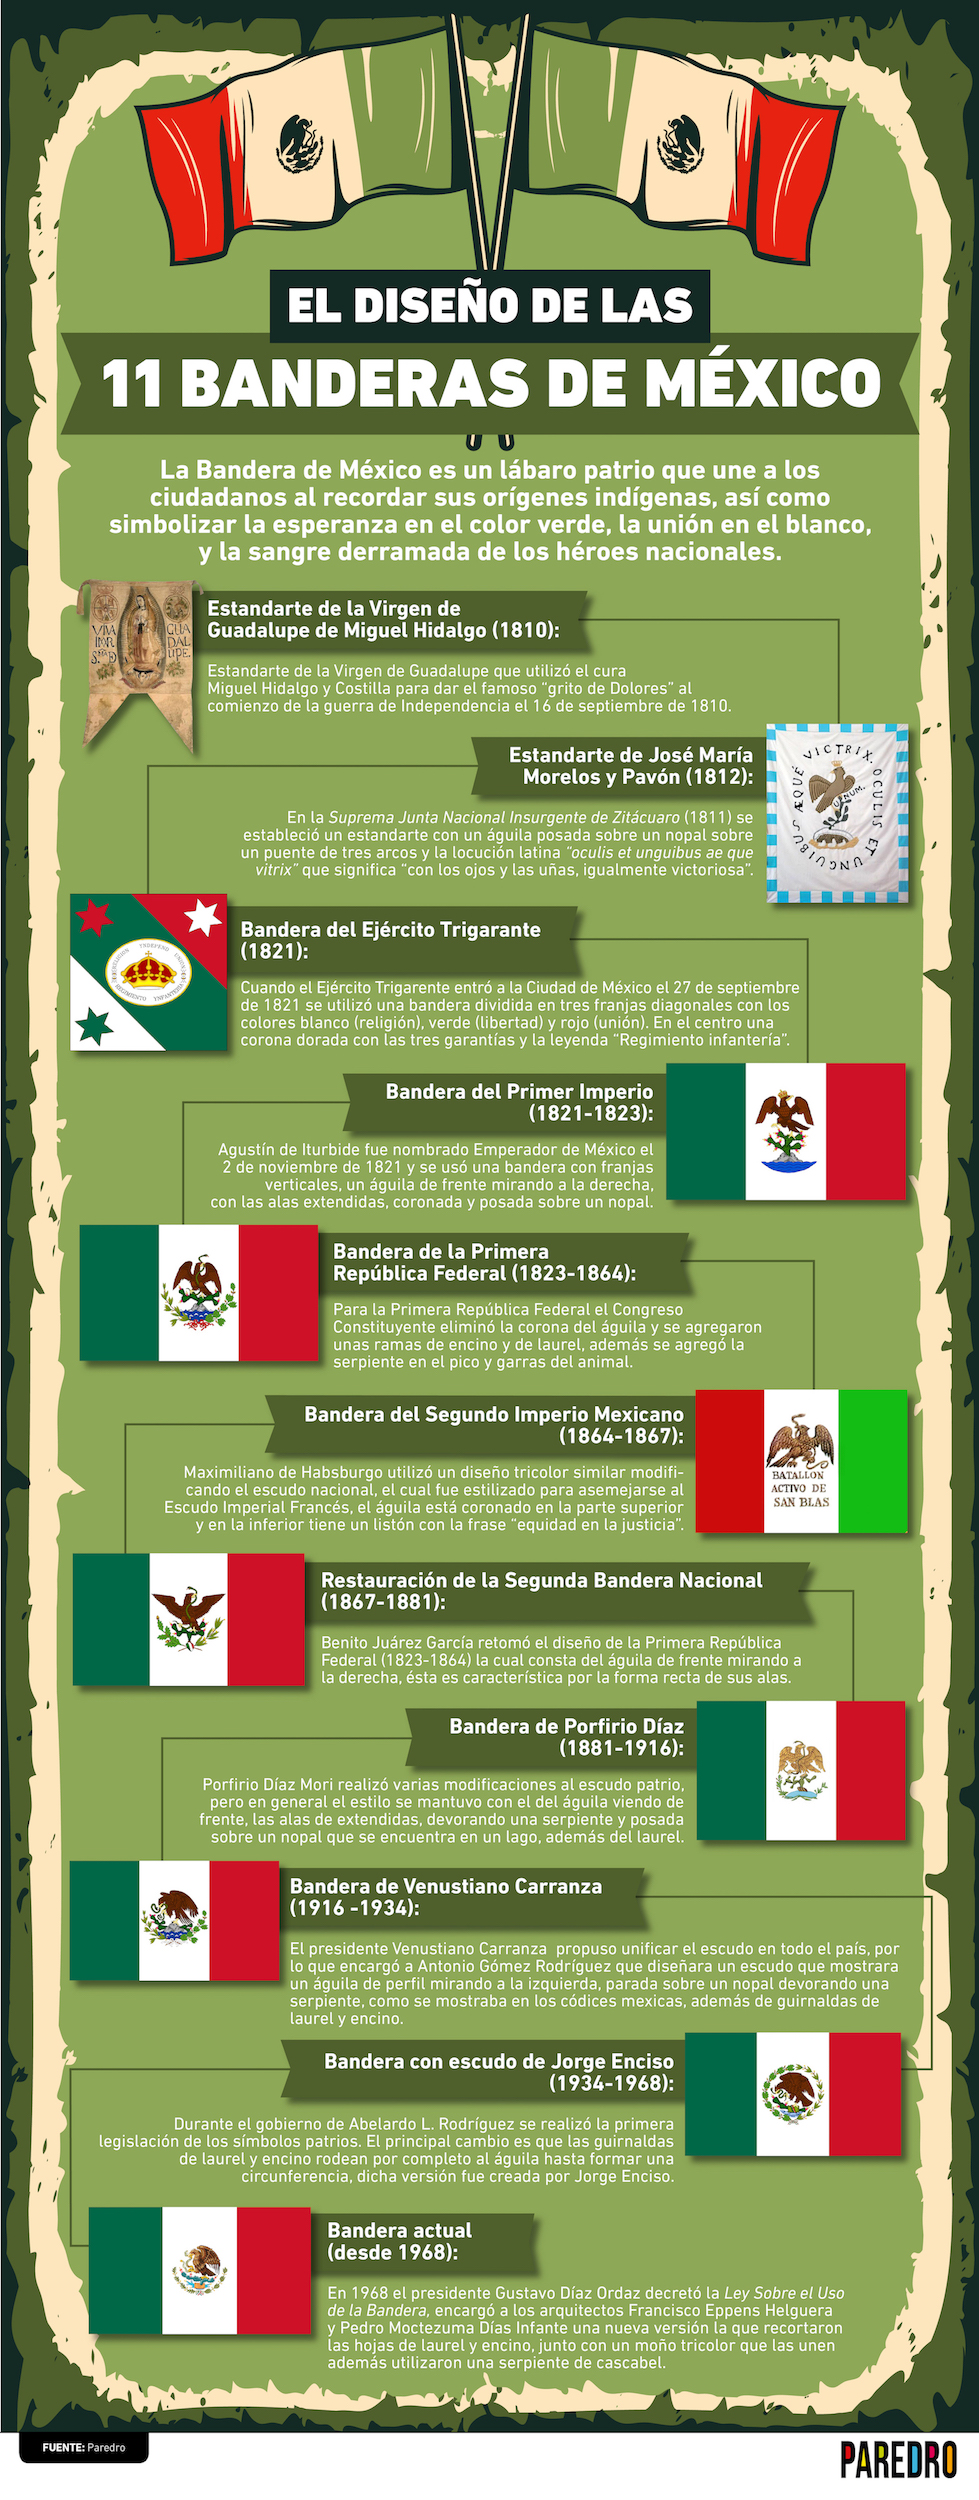 A lo largo de la historia del país, desde su independencia a la actualidad, han existido 11 Banderas de México oficiales, conócelas cronológicamente.